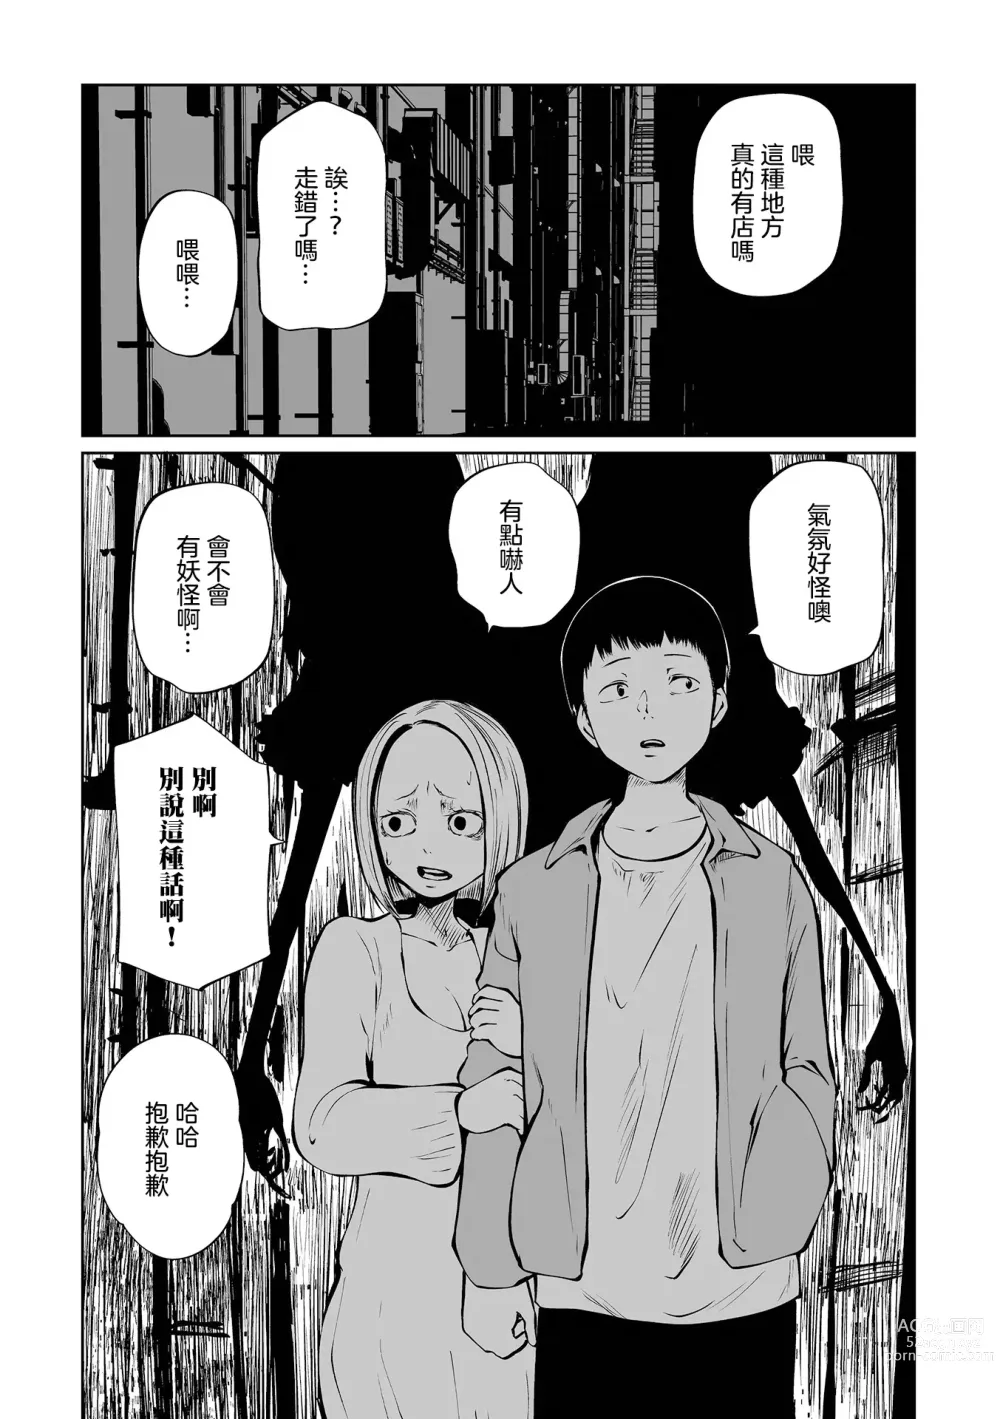 Page 40 of manga 地下生活